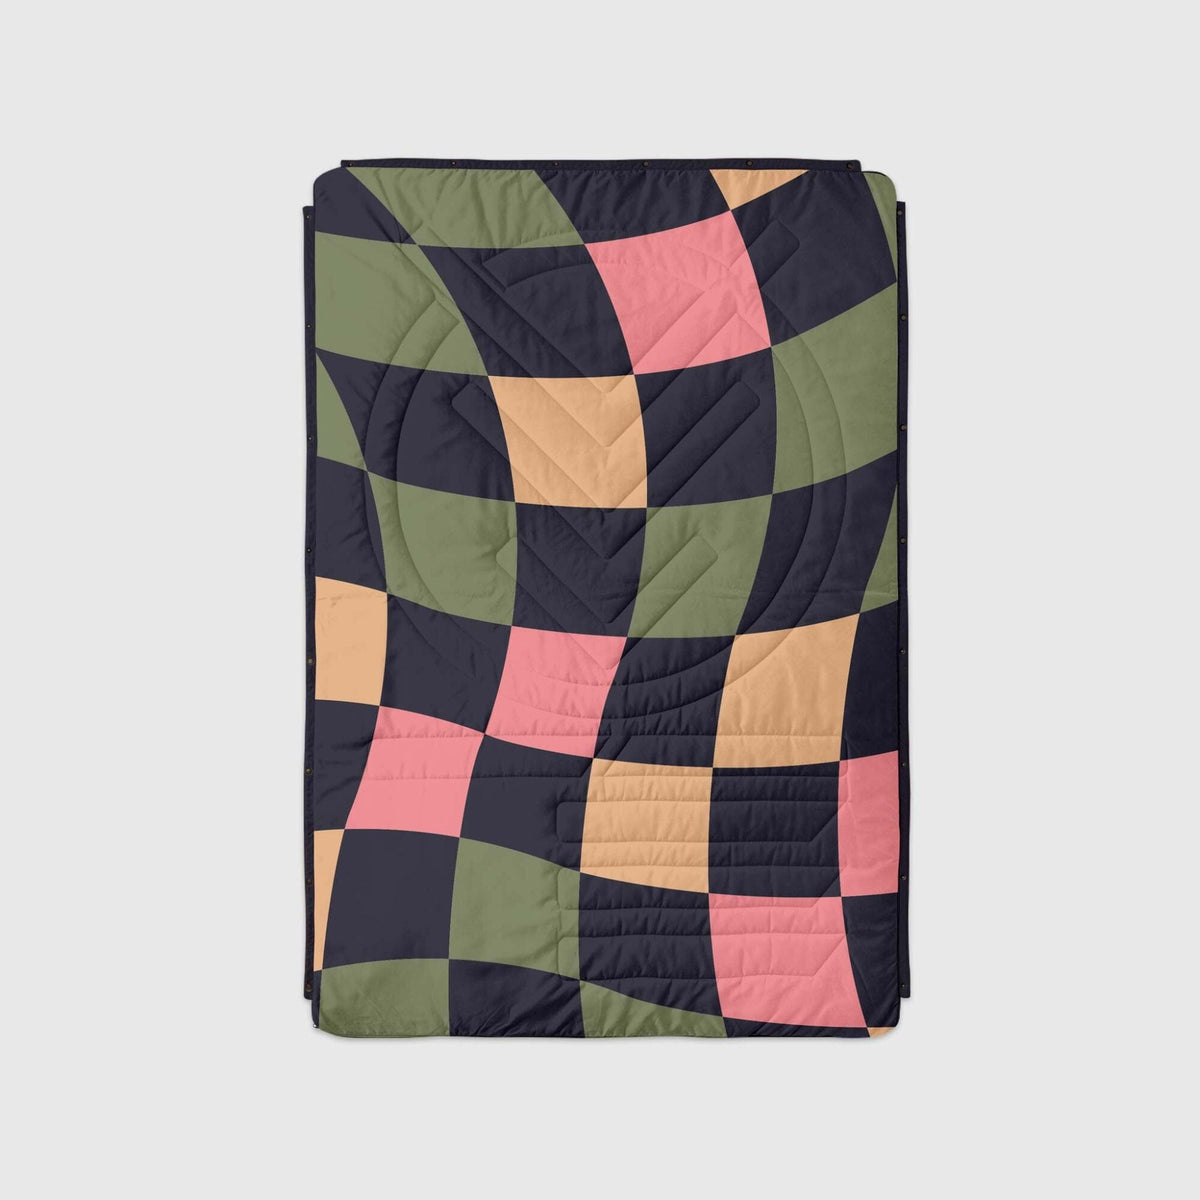 VOITED Mini Traveler Cream Indoor / Outdoor Camping Blanket - Wavecheck Blankets VOITED 